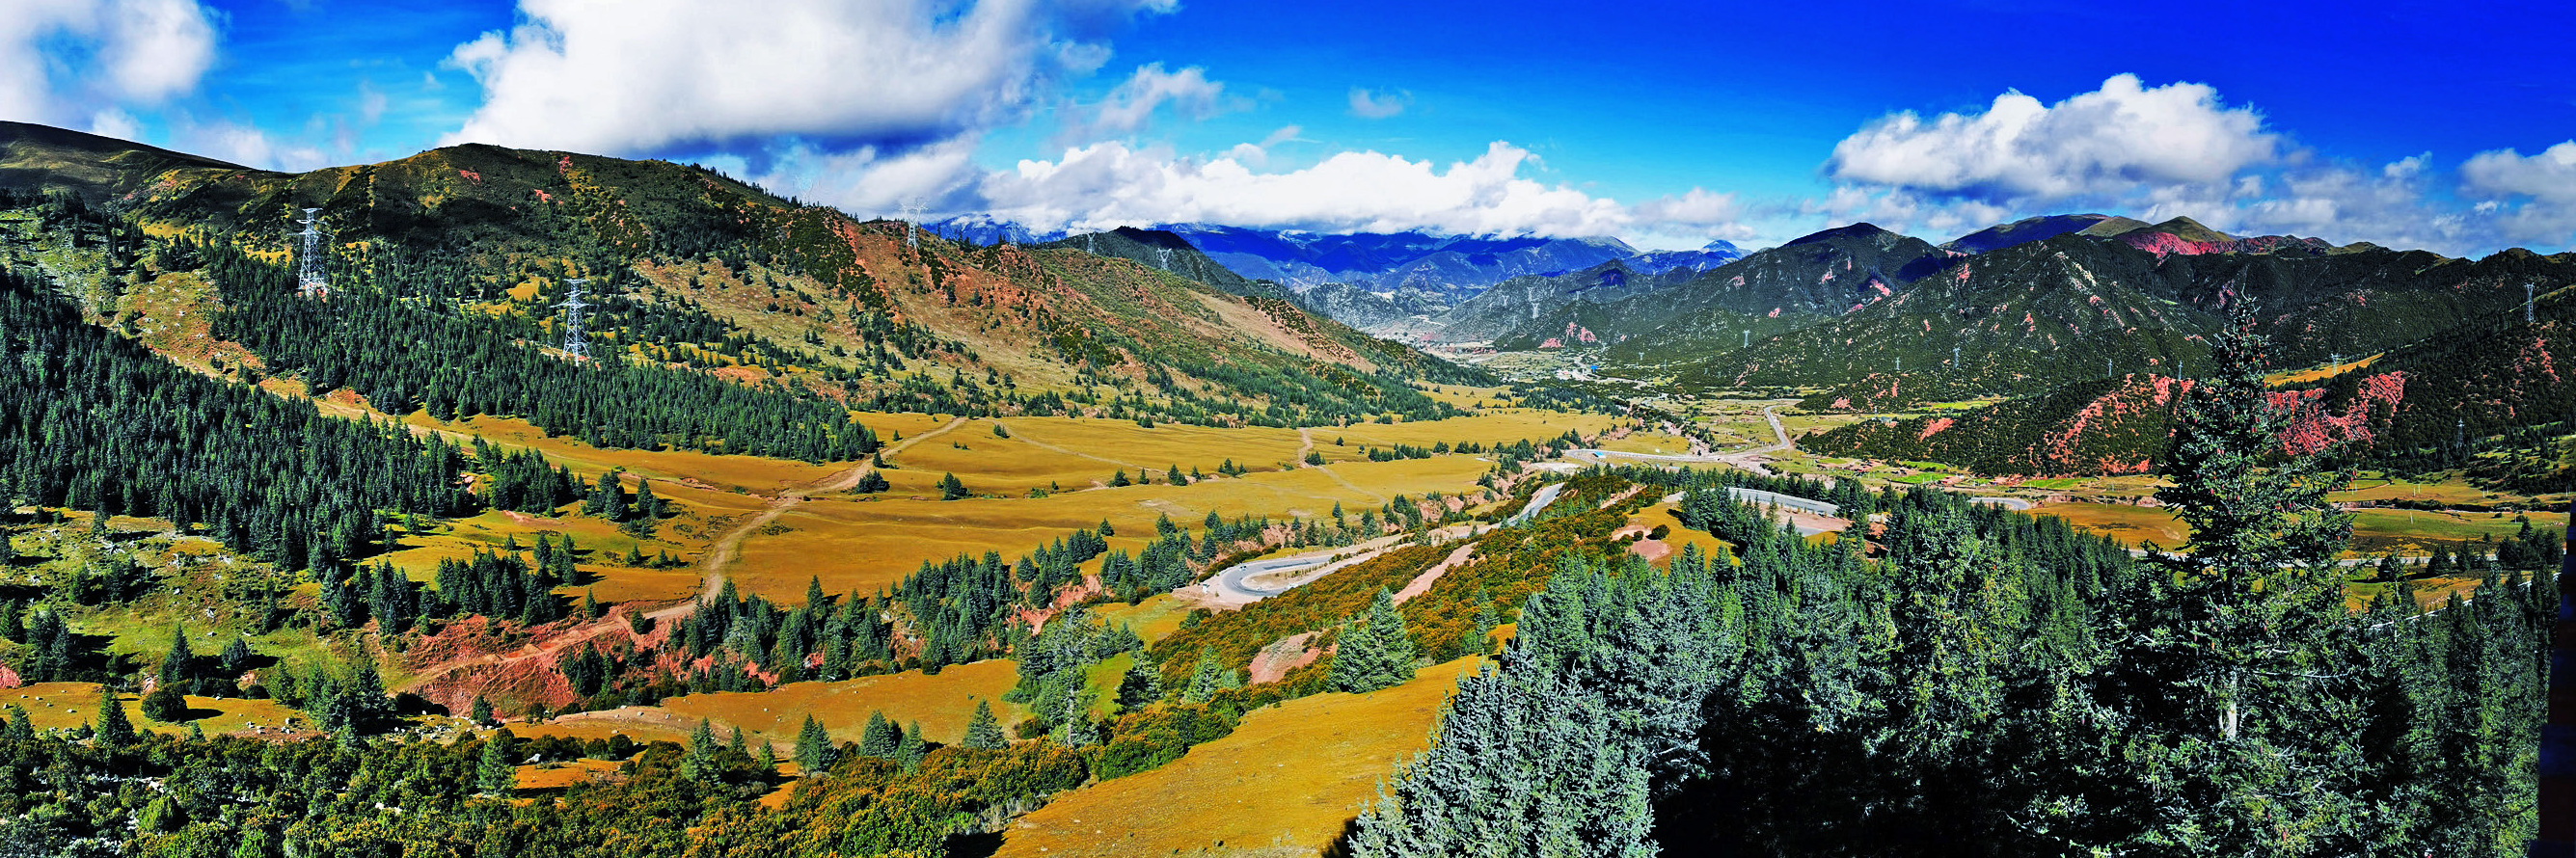 【爱车生活秀】穿越青藏：一望无垠风景迤逦的拉乌山草甸美不胜收